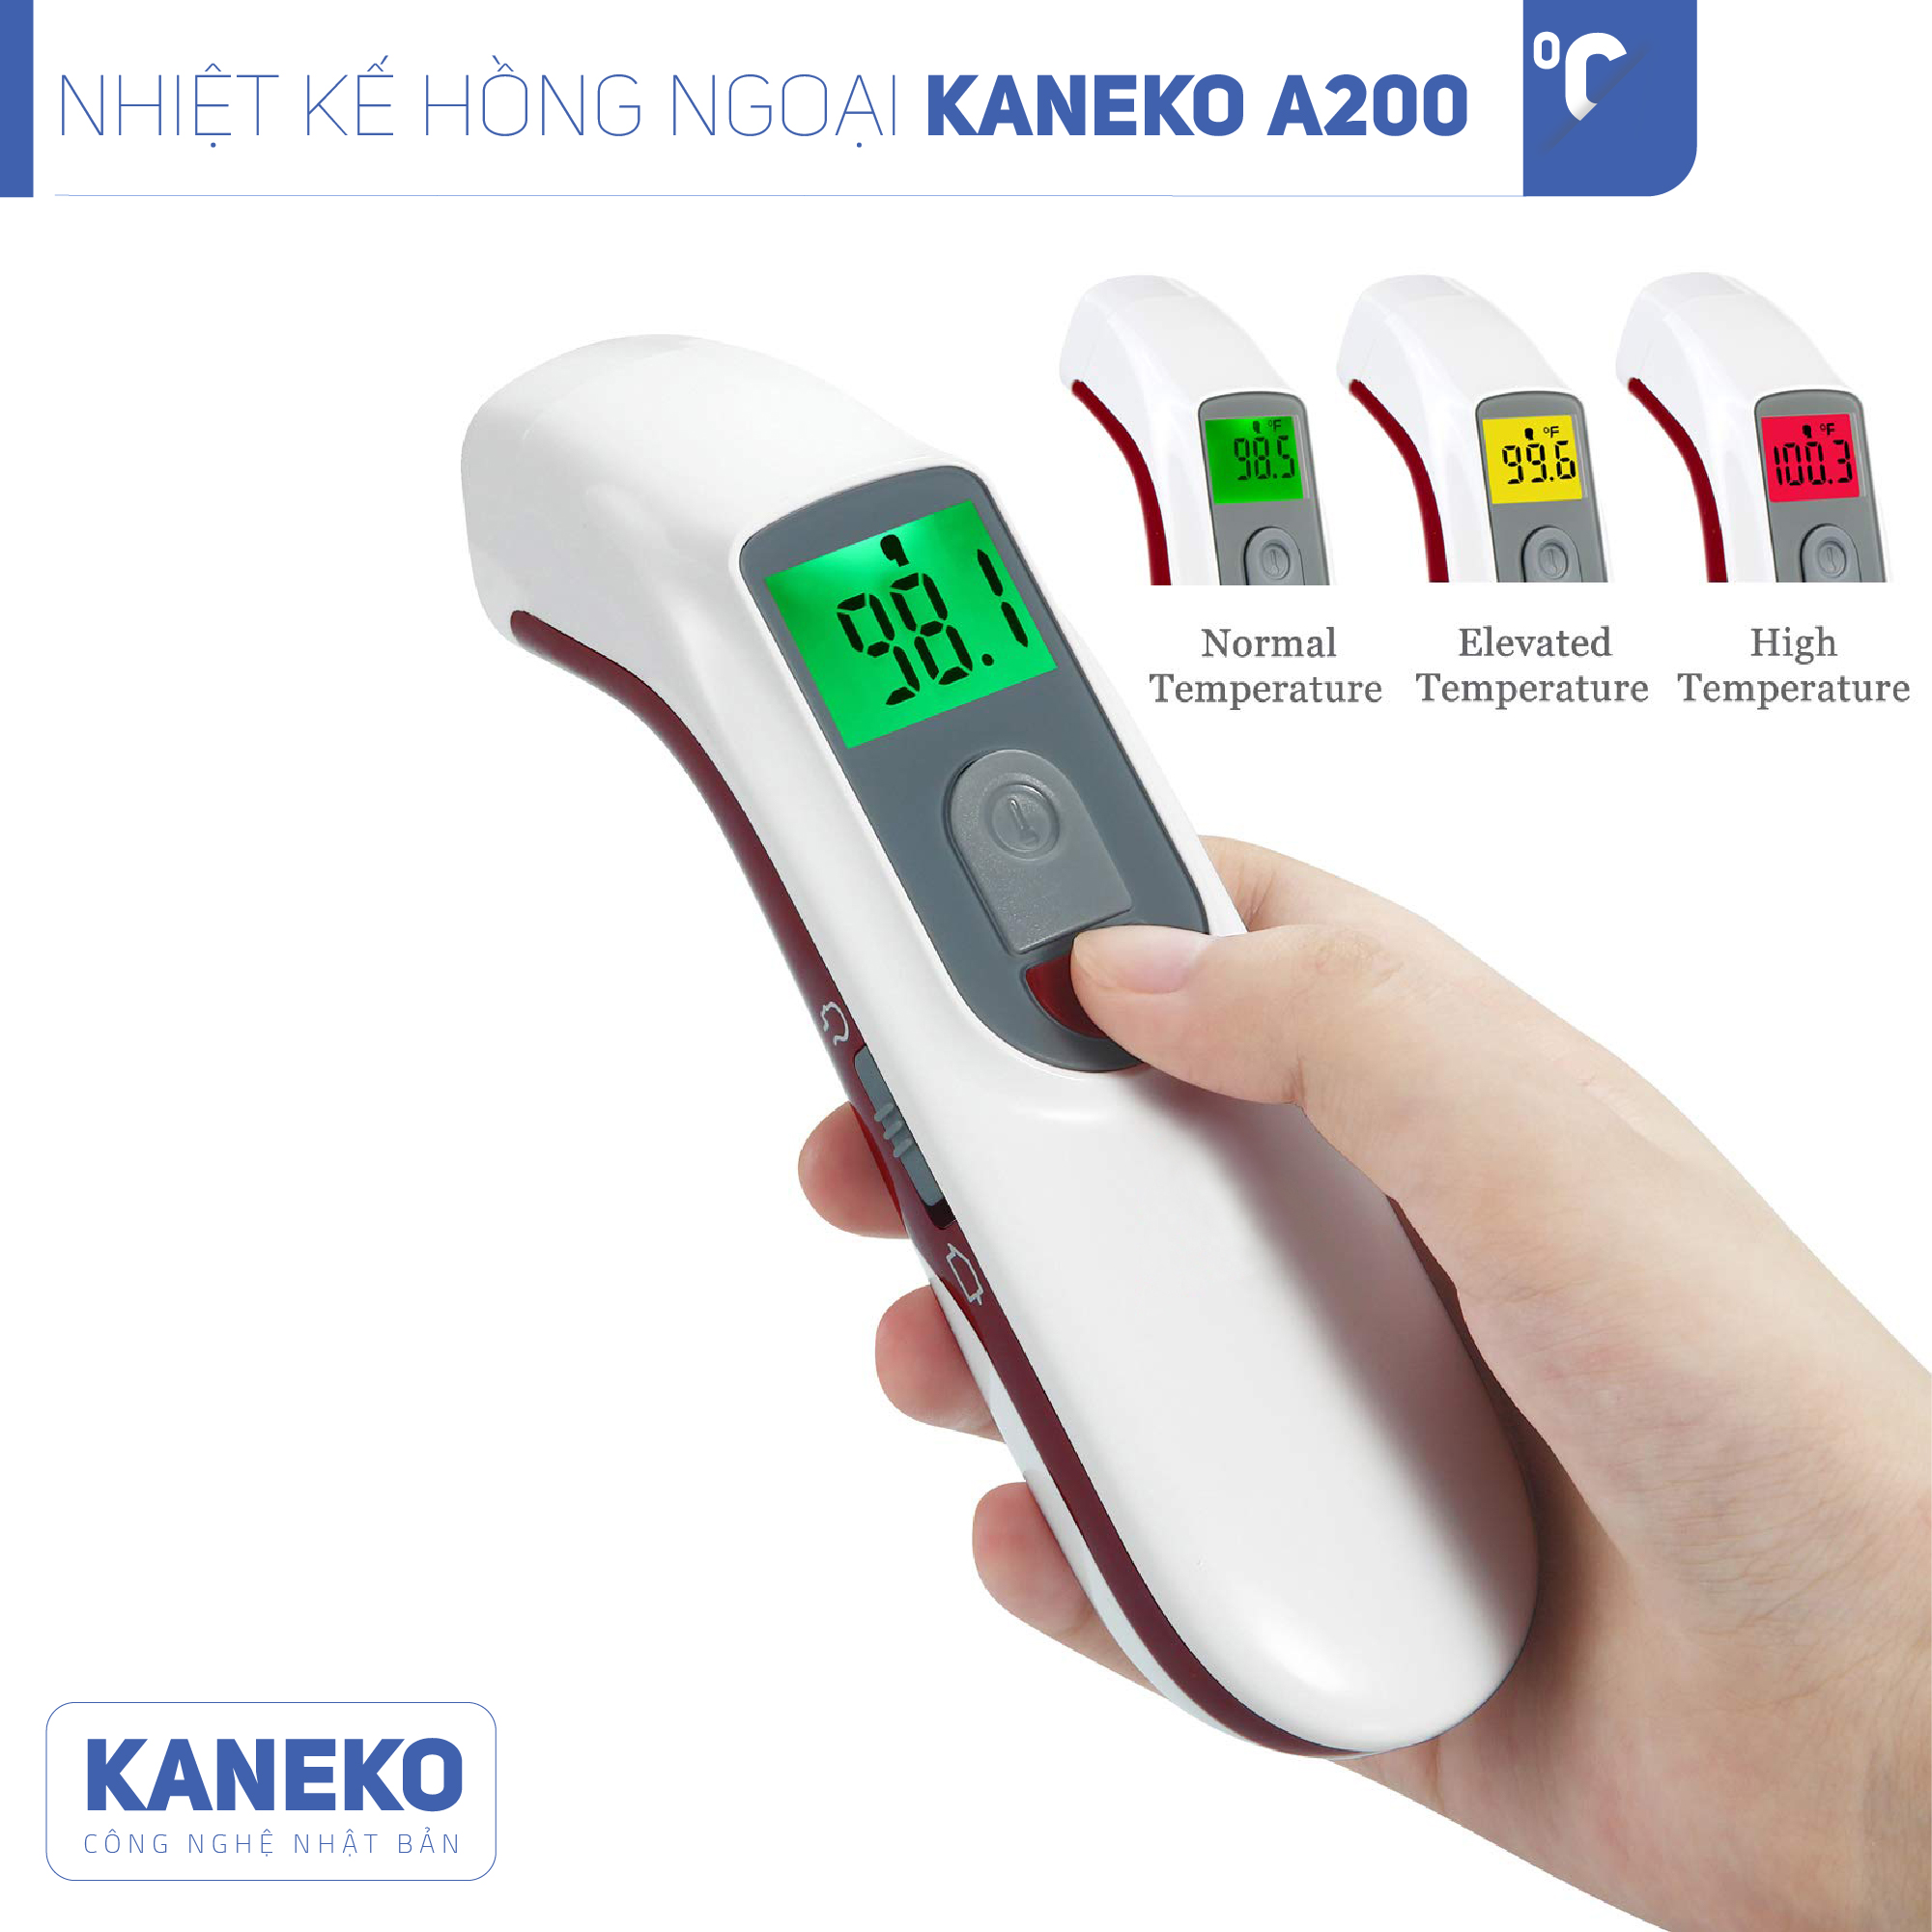 Nhiệt kế hồng ngoại KANEKO A200,Nhiệt kế cầm tay,Nhiệt kế đo trán,Nhiệt kế điện tử,Nhiệt kế đo độ sữa,Nhiệt kế đo nhiệt độ dành cho trẻ em,Máy đo thân nhiệt